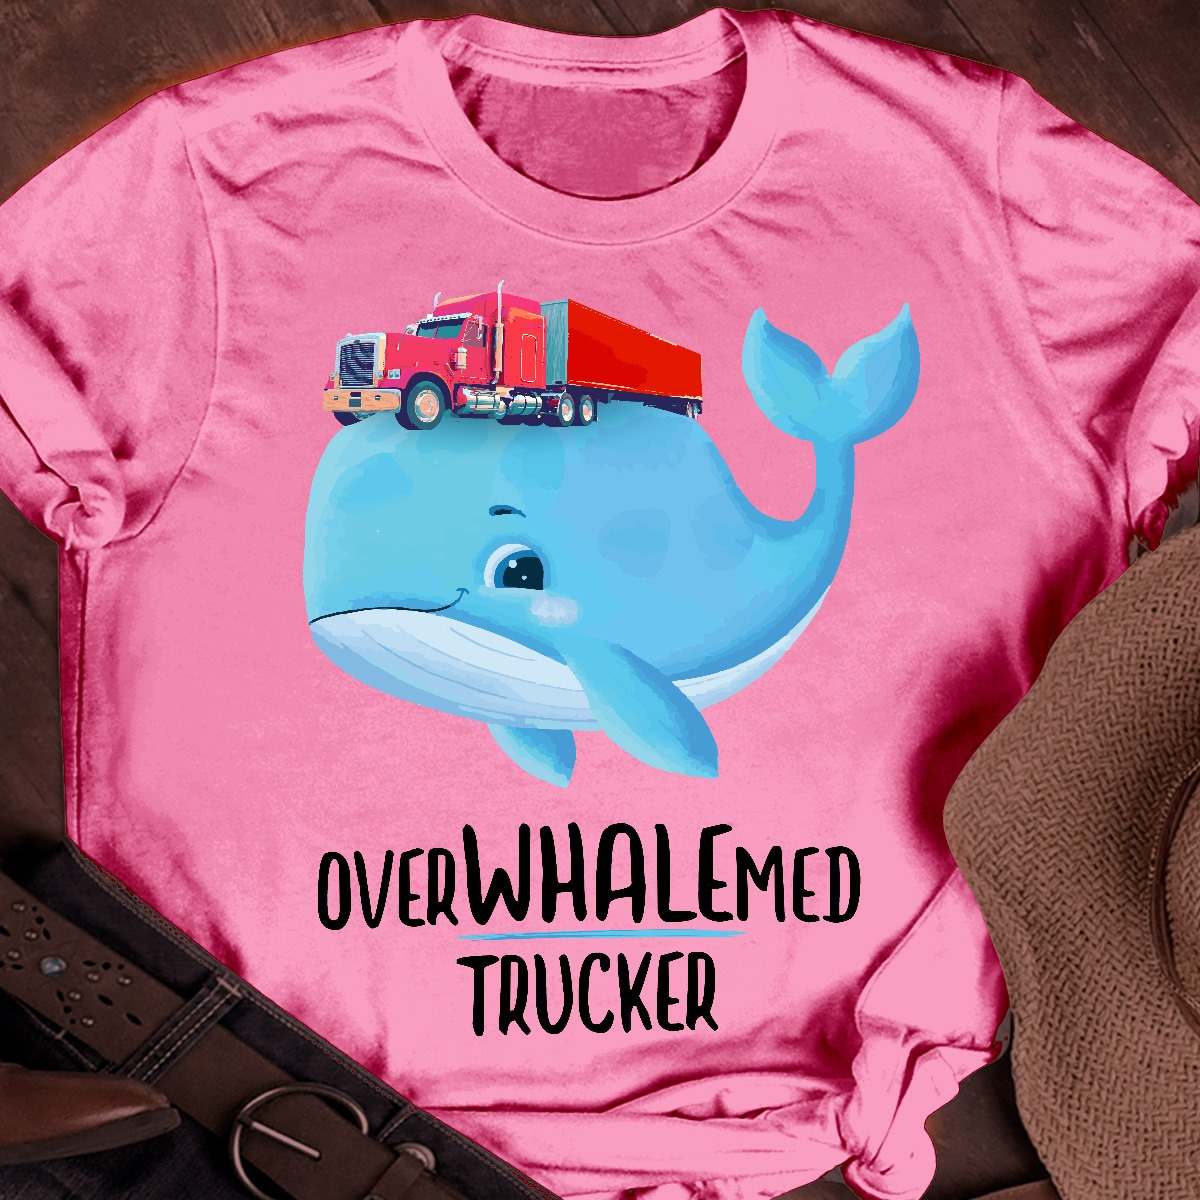 Overwhalemed trucker - Blue whale, trucker the job